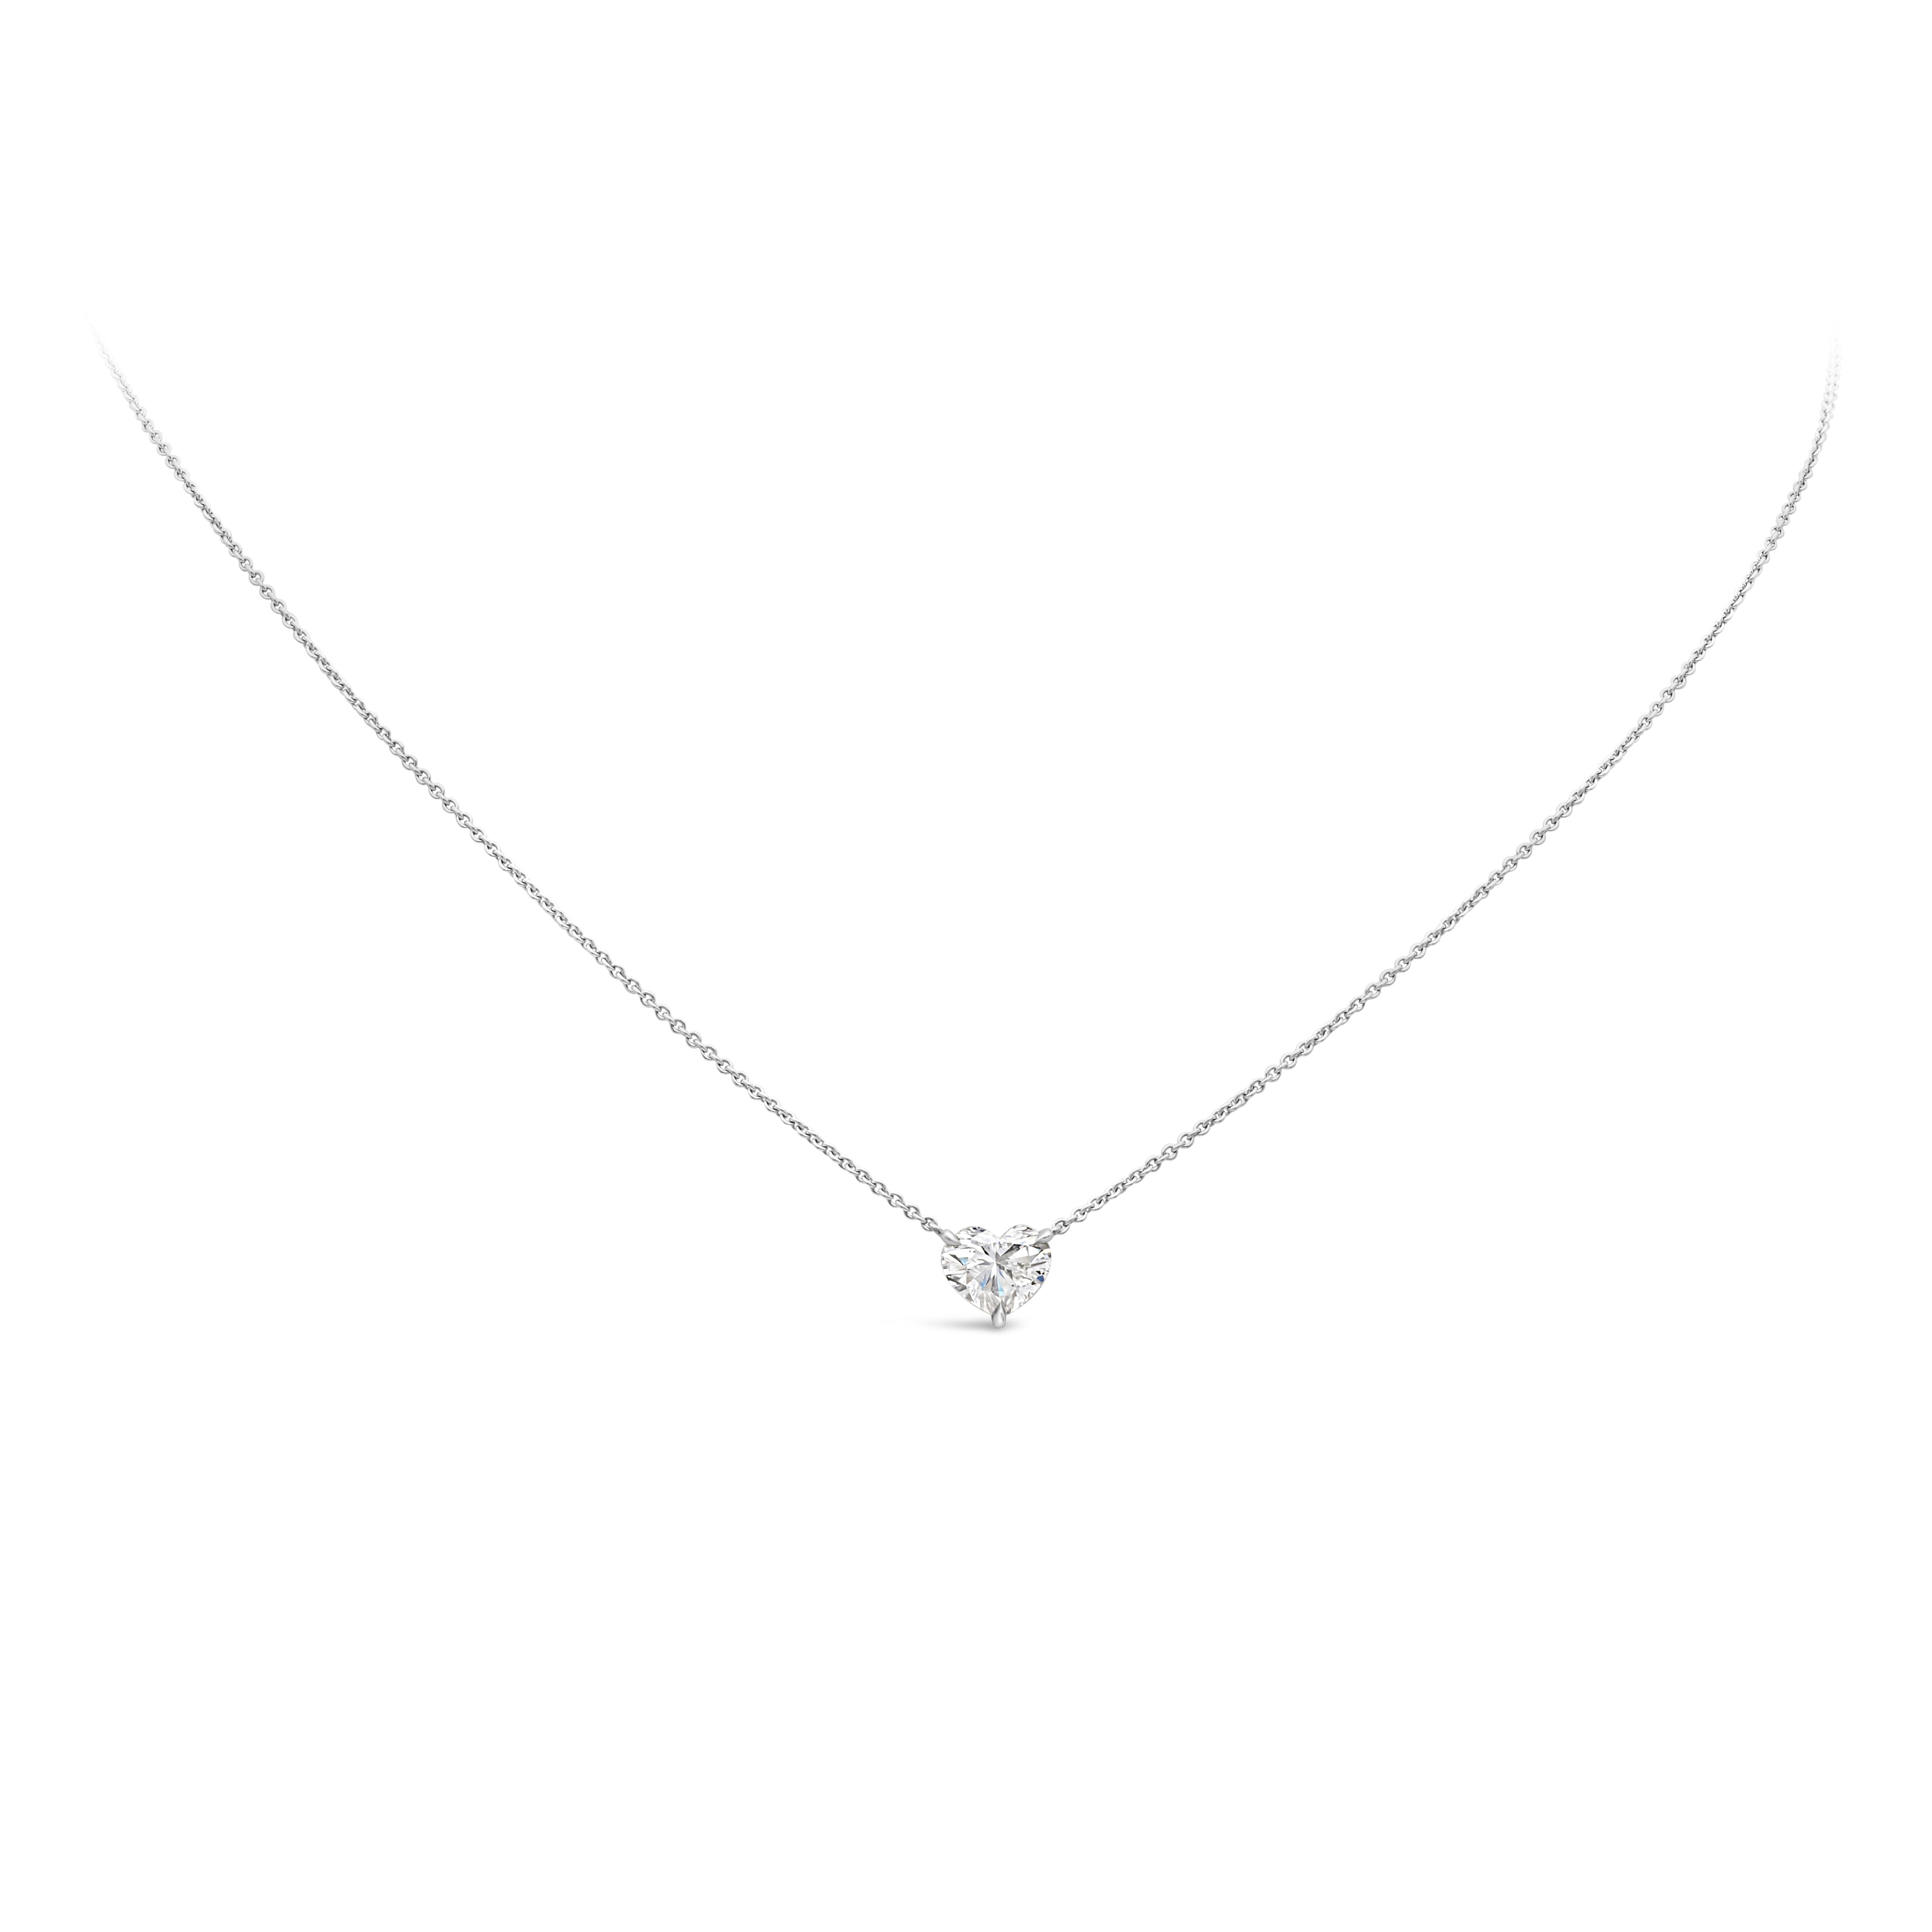 Collier pendentif classique mettant en valeur un diamant en forme de cœur certifié GIA de 1,18 carats, de couleur J et de pureté SI2. Montée dans un panier en platine poli. Suspendu à une chaîne en or blanc 18K réglable de 16 pouces. Parfait pour